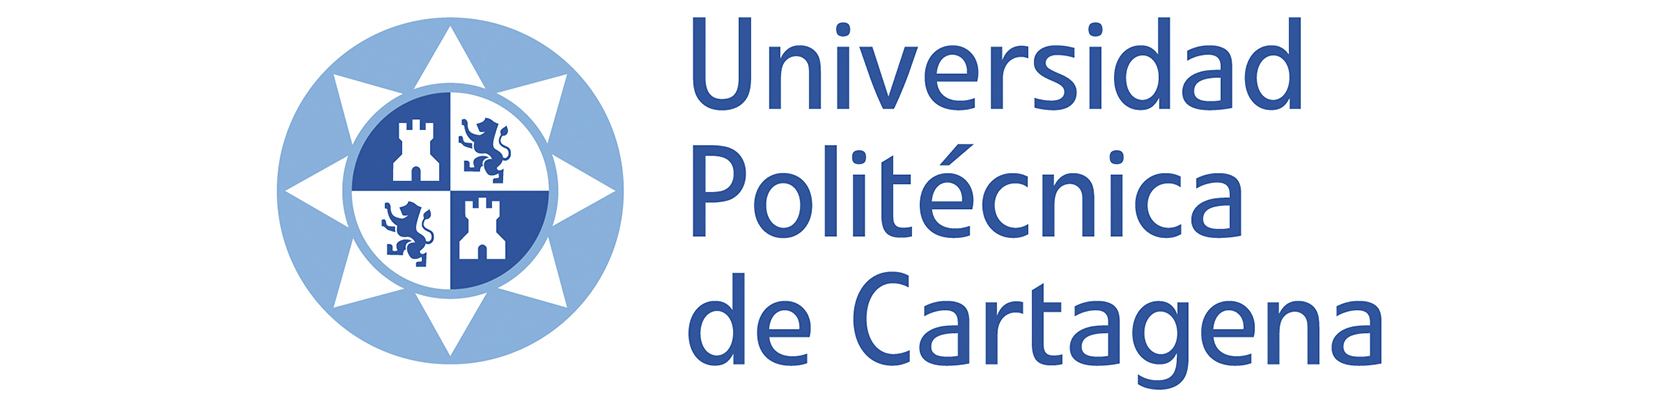 Logo Universidad Politécnica de Cartagena